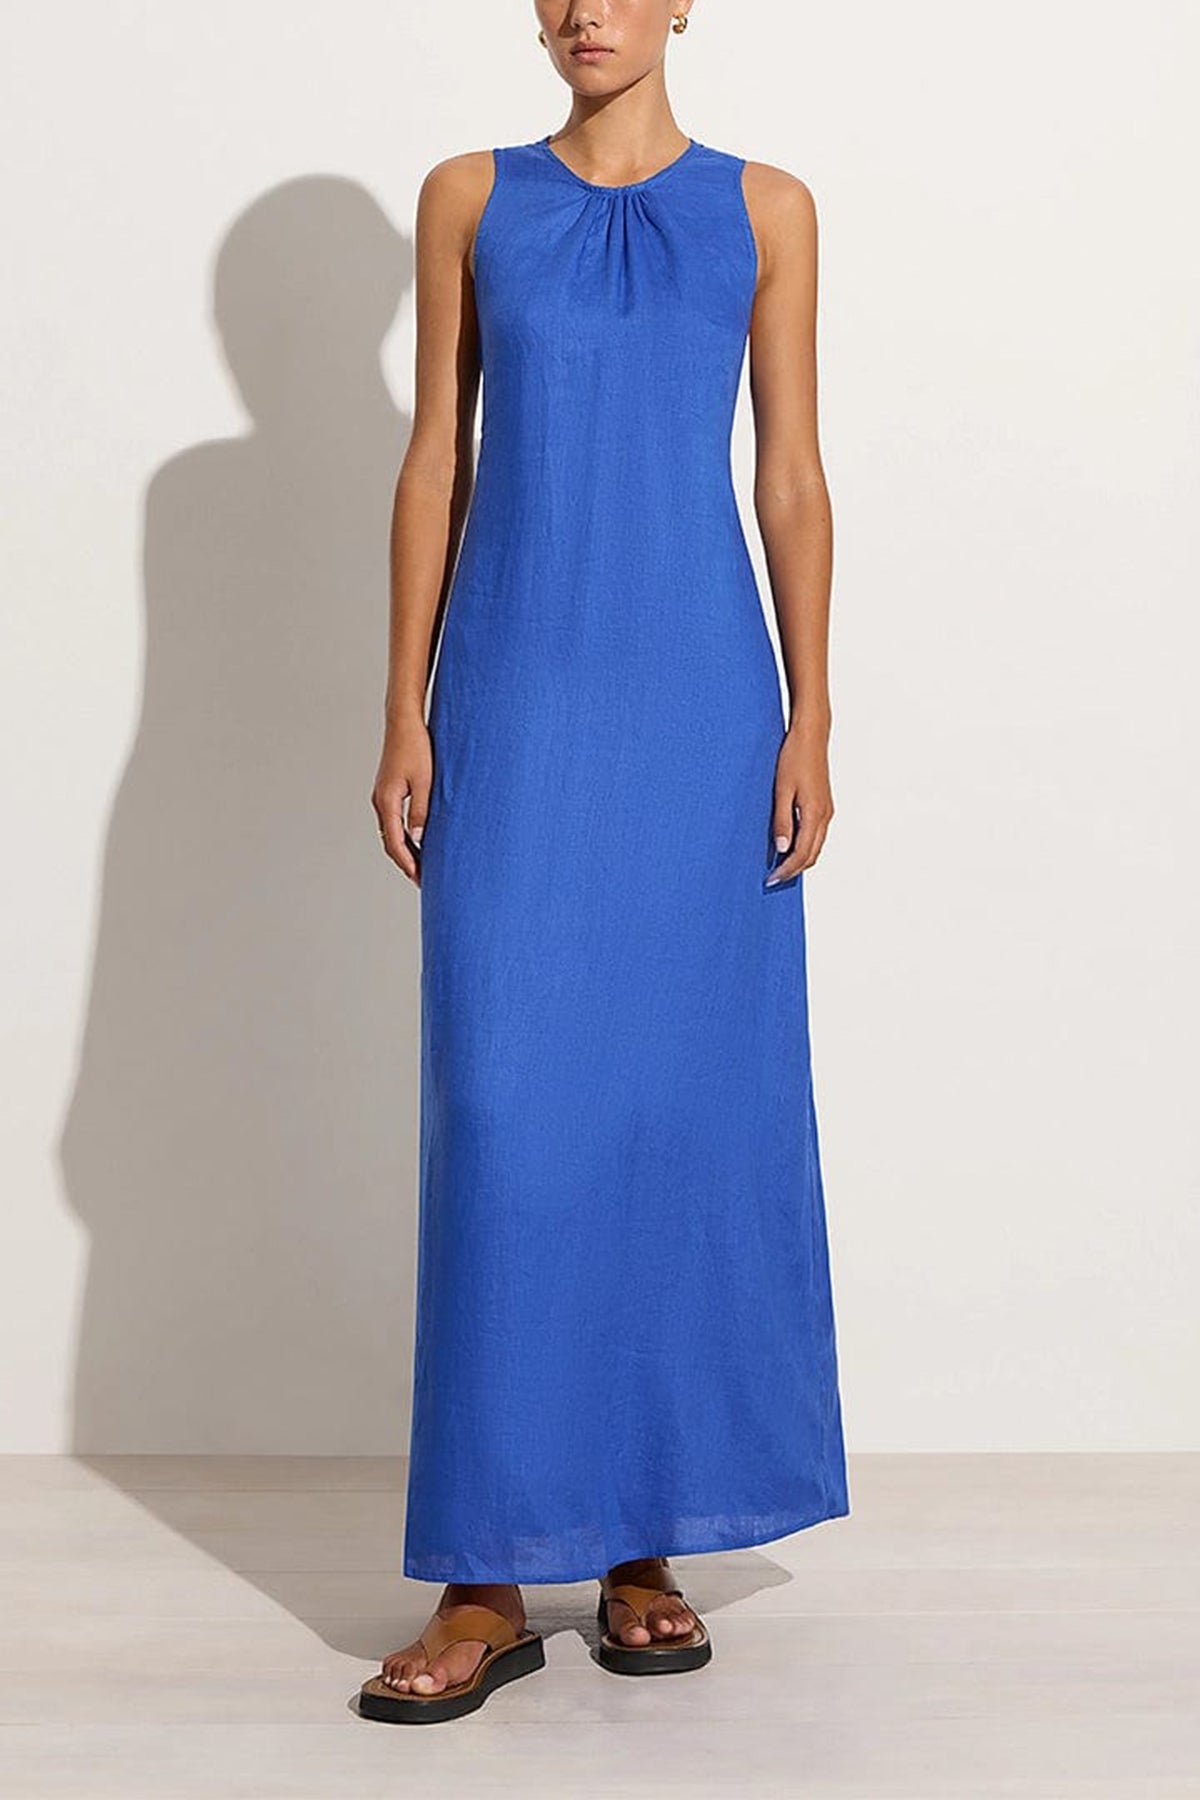 Sommar Maxi Dress in Sicilian Blue - shop-olivia.com